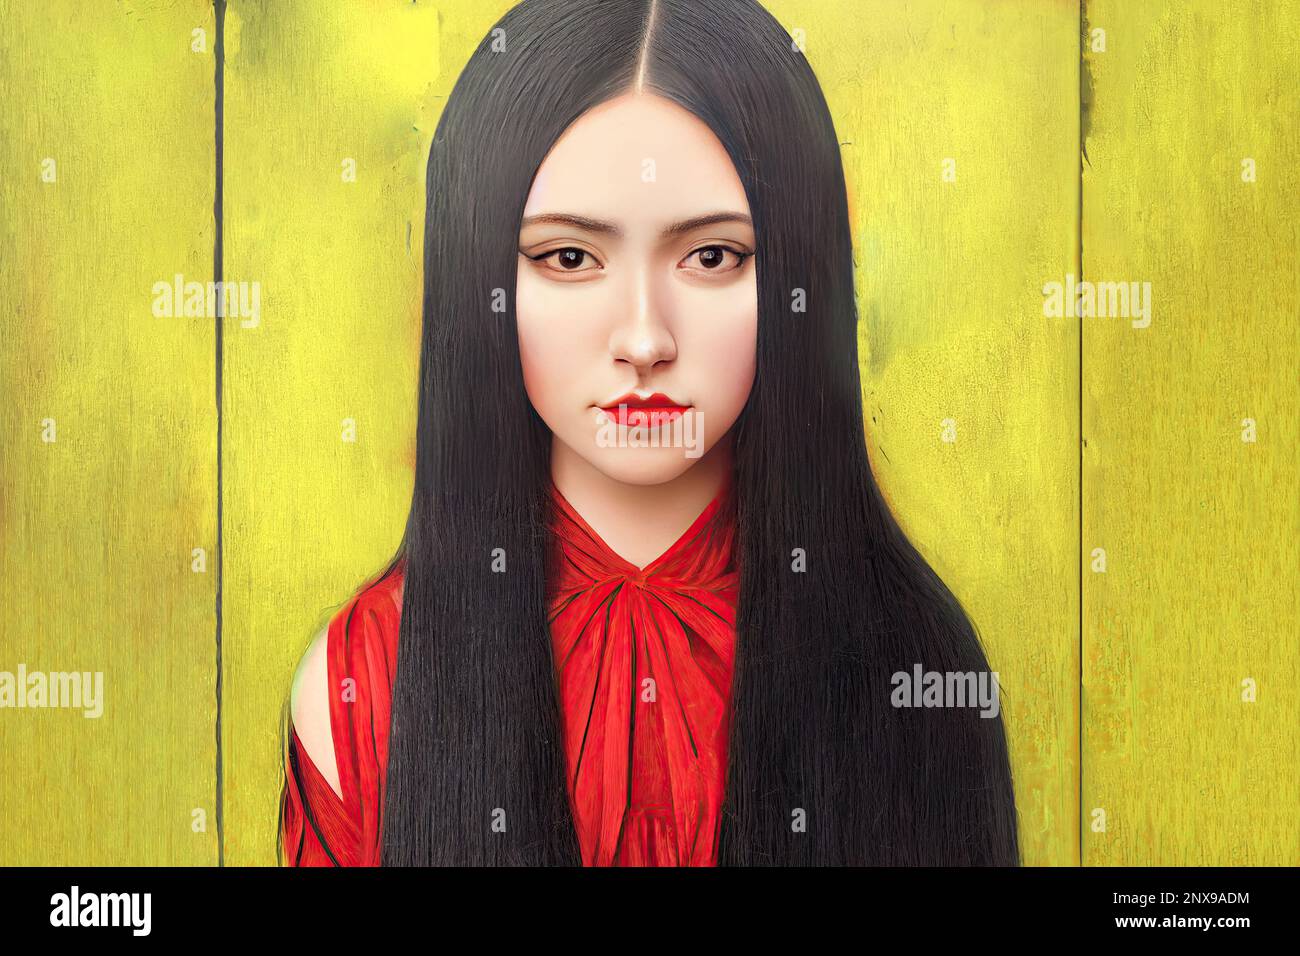 Ritratto d'arte di una giovane donna con lunghi capelli neri, adagiato su uno sfondo giallo vibrante. i capelli sono un contrasto sorprendente rispetto allo sfondo audace Foto Stock